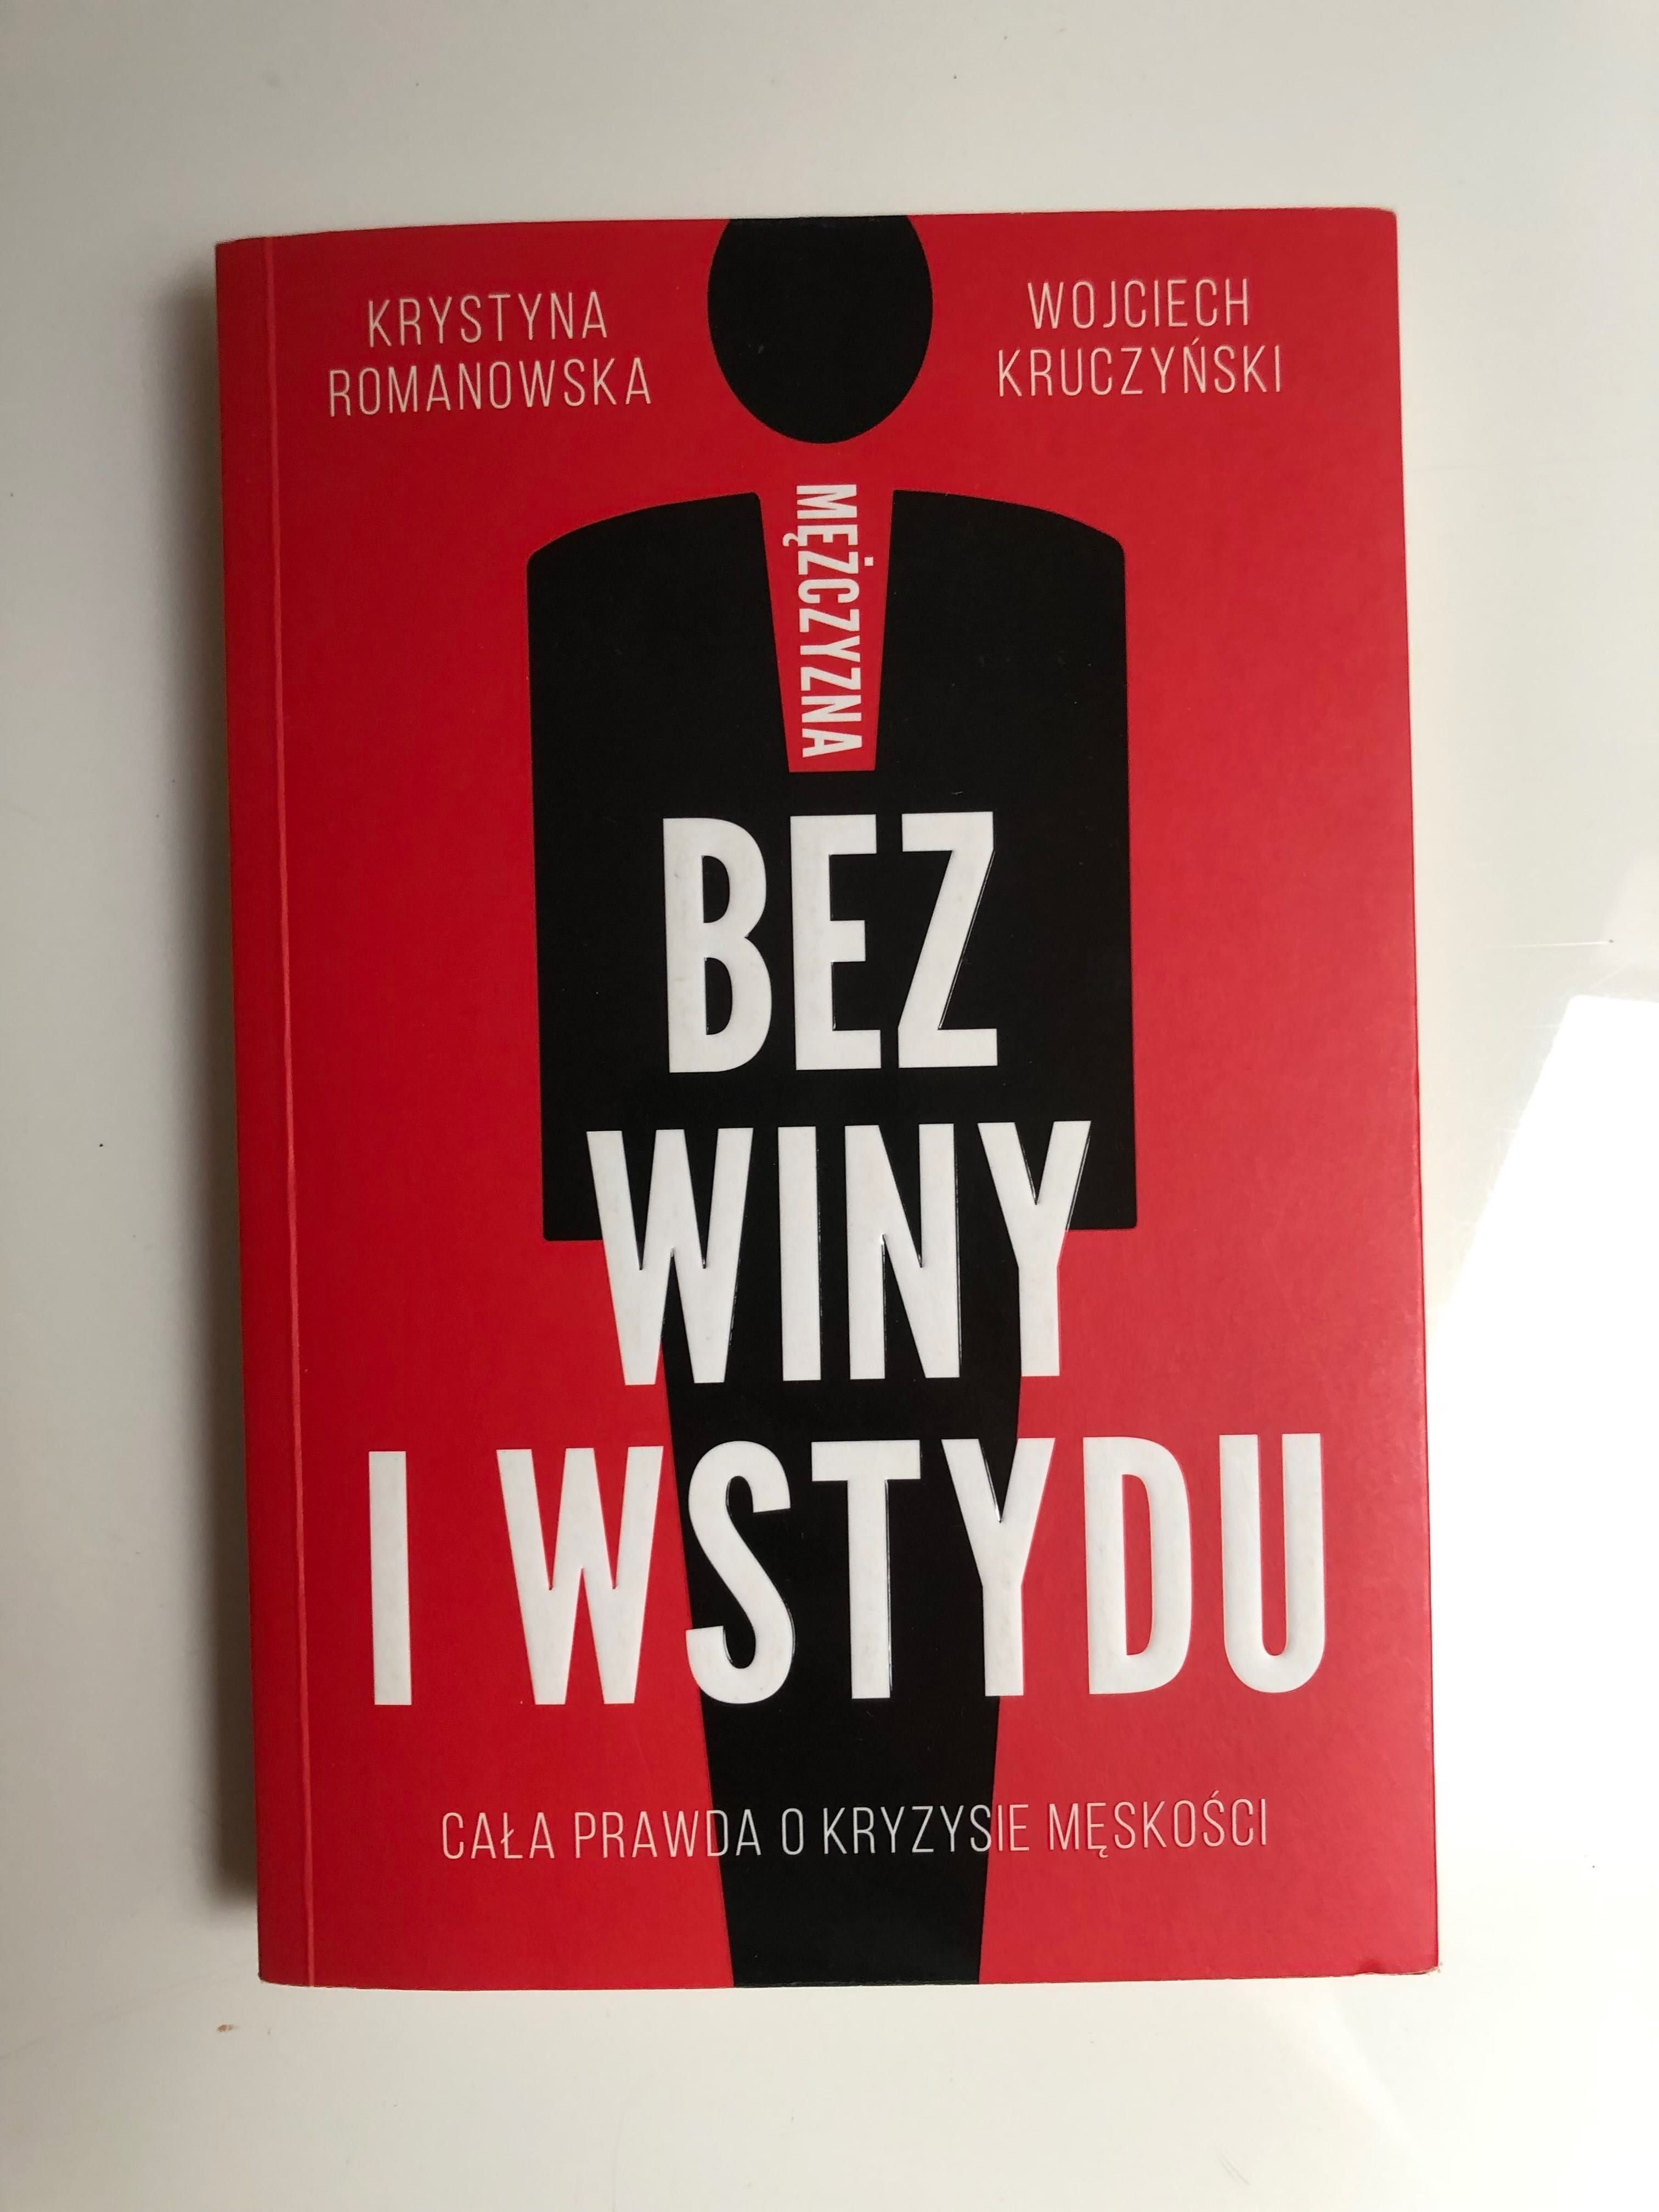 Mężczyzna bez winy i wstydu - Krystyna Romanowska Kruczyński Wojciech